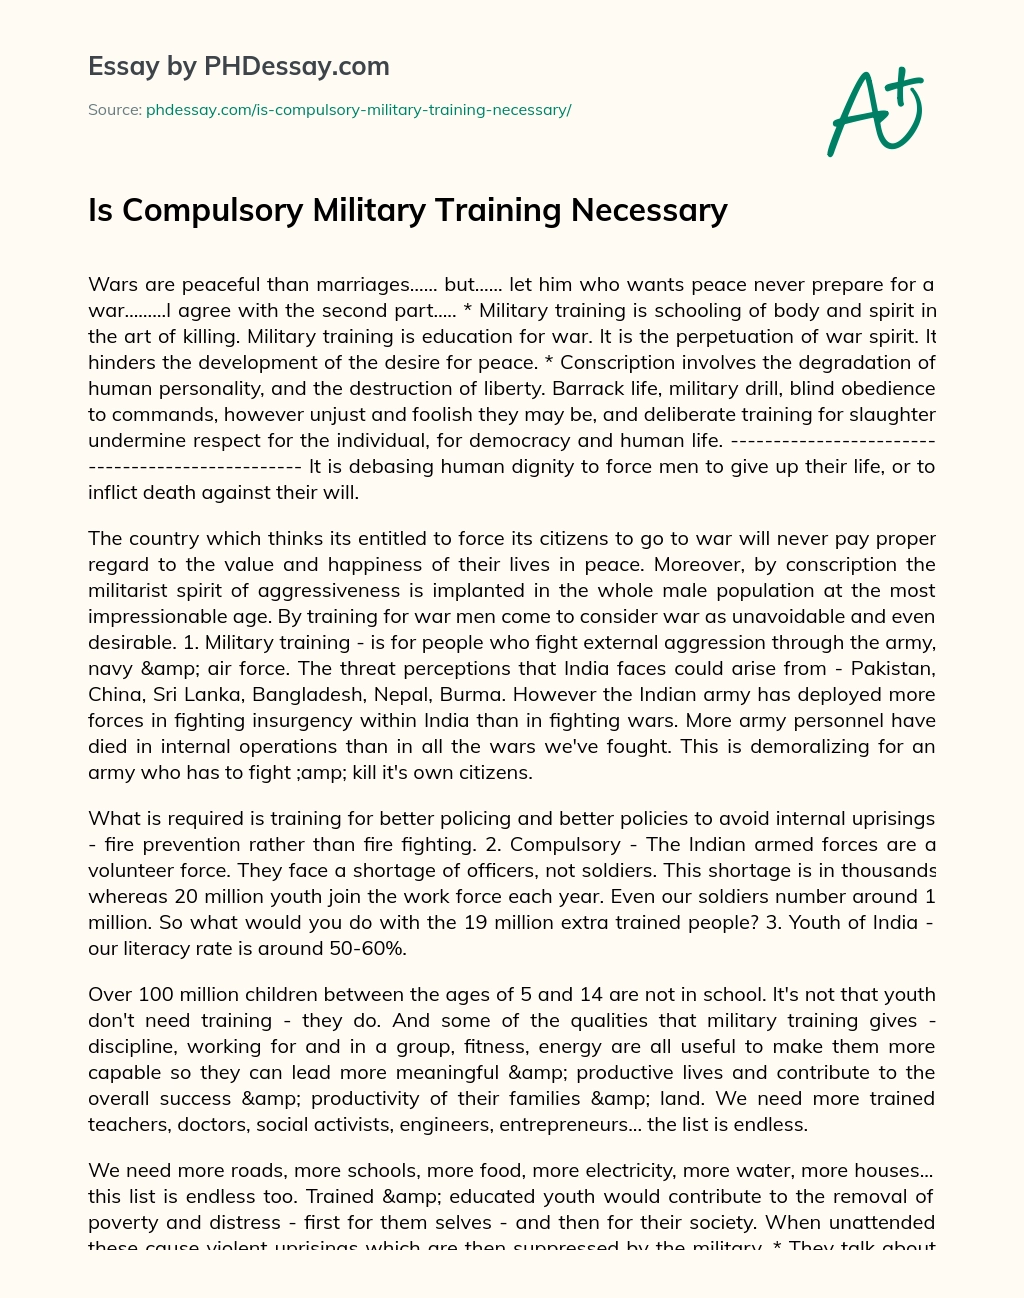 Is Compulsory Military Training Necessary essay